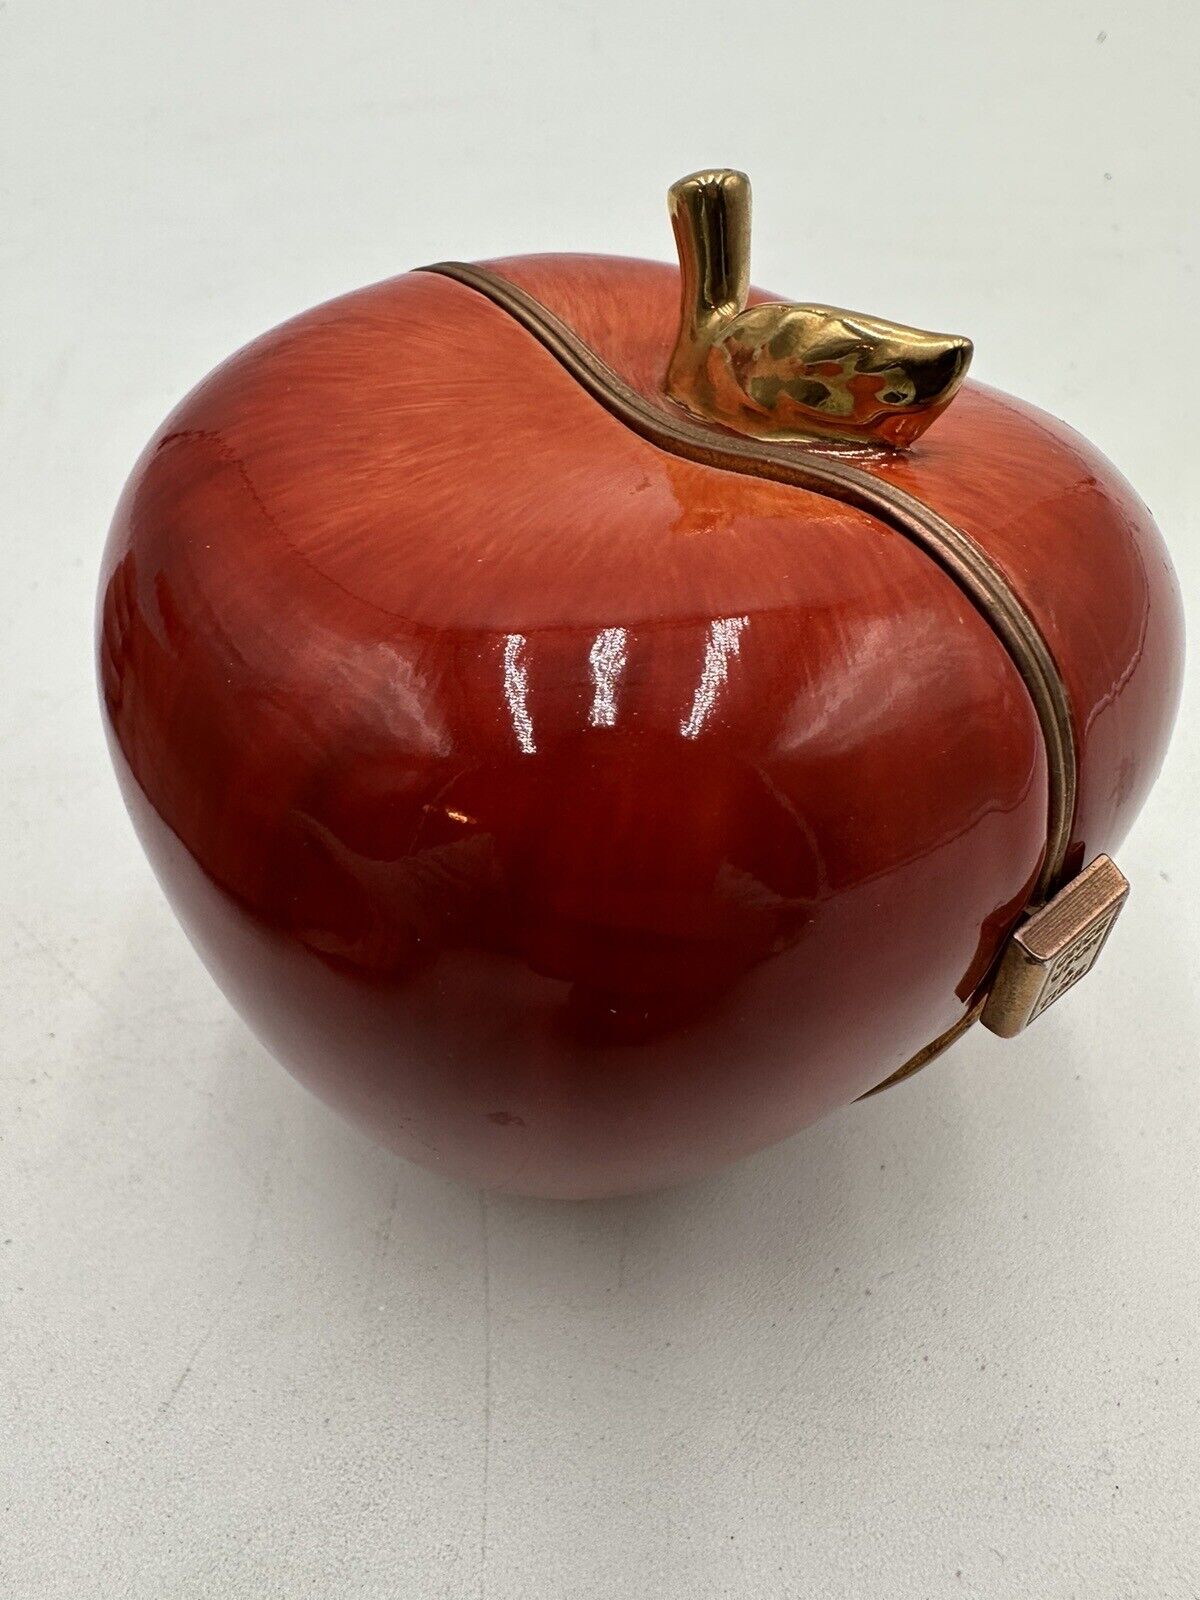 Heart of Teaching Music Box Heirloom Porcelain Apple Red Opens -Ardleigh Elliott